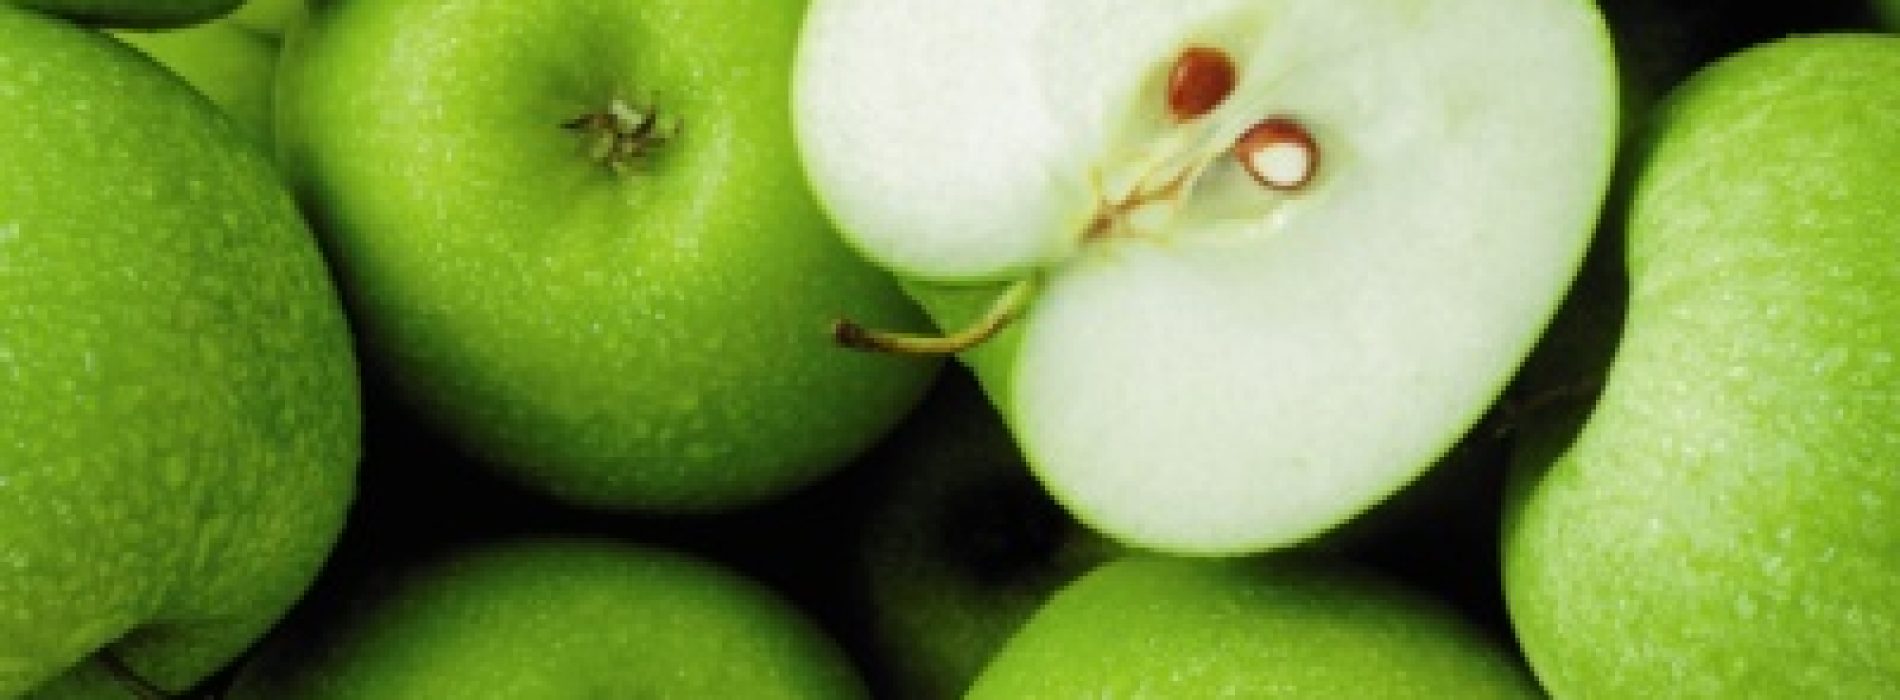 Appels kunnen levensverwachting verhogen